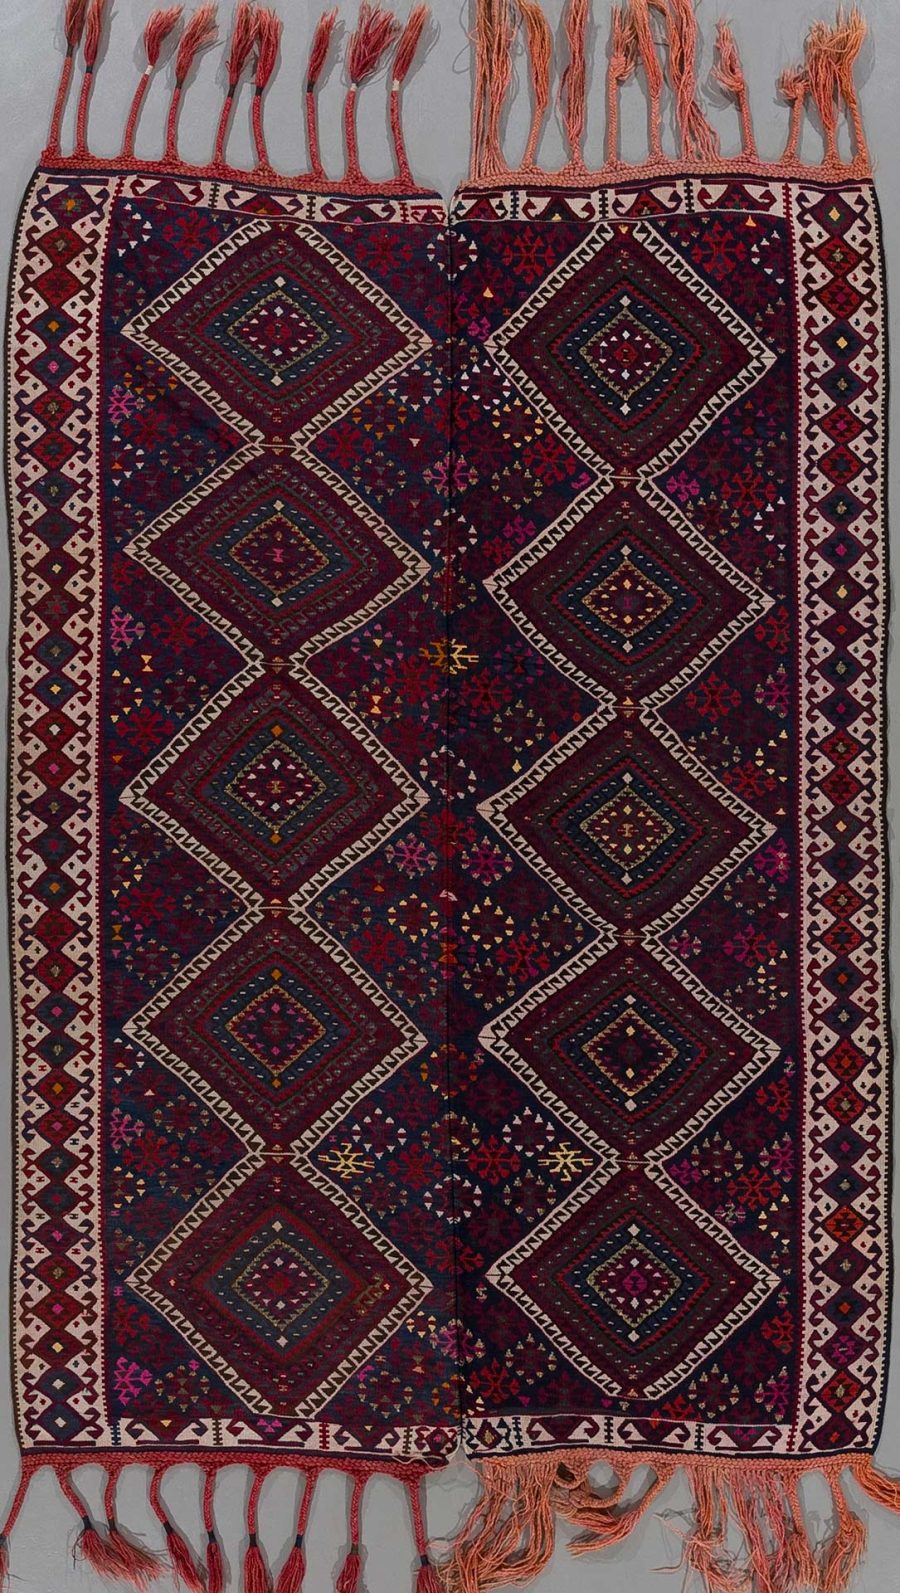 Traditioneller handgewebter Teppich mit geometrischem Muster in Dunkelrot, Schwarz und mehrfarbigen Akzenten, flankiert von verzierten Bordüren und Fransen an den Enden.